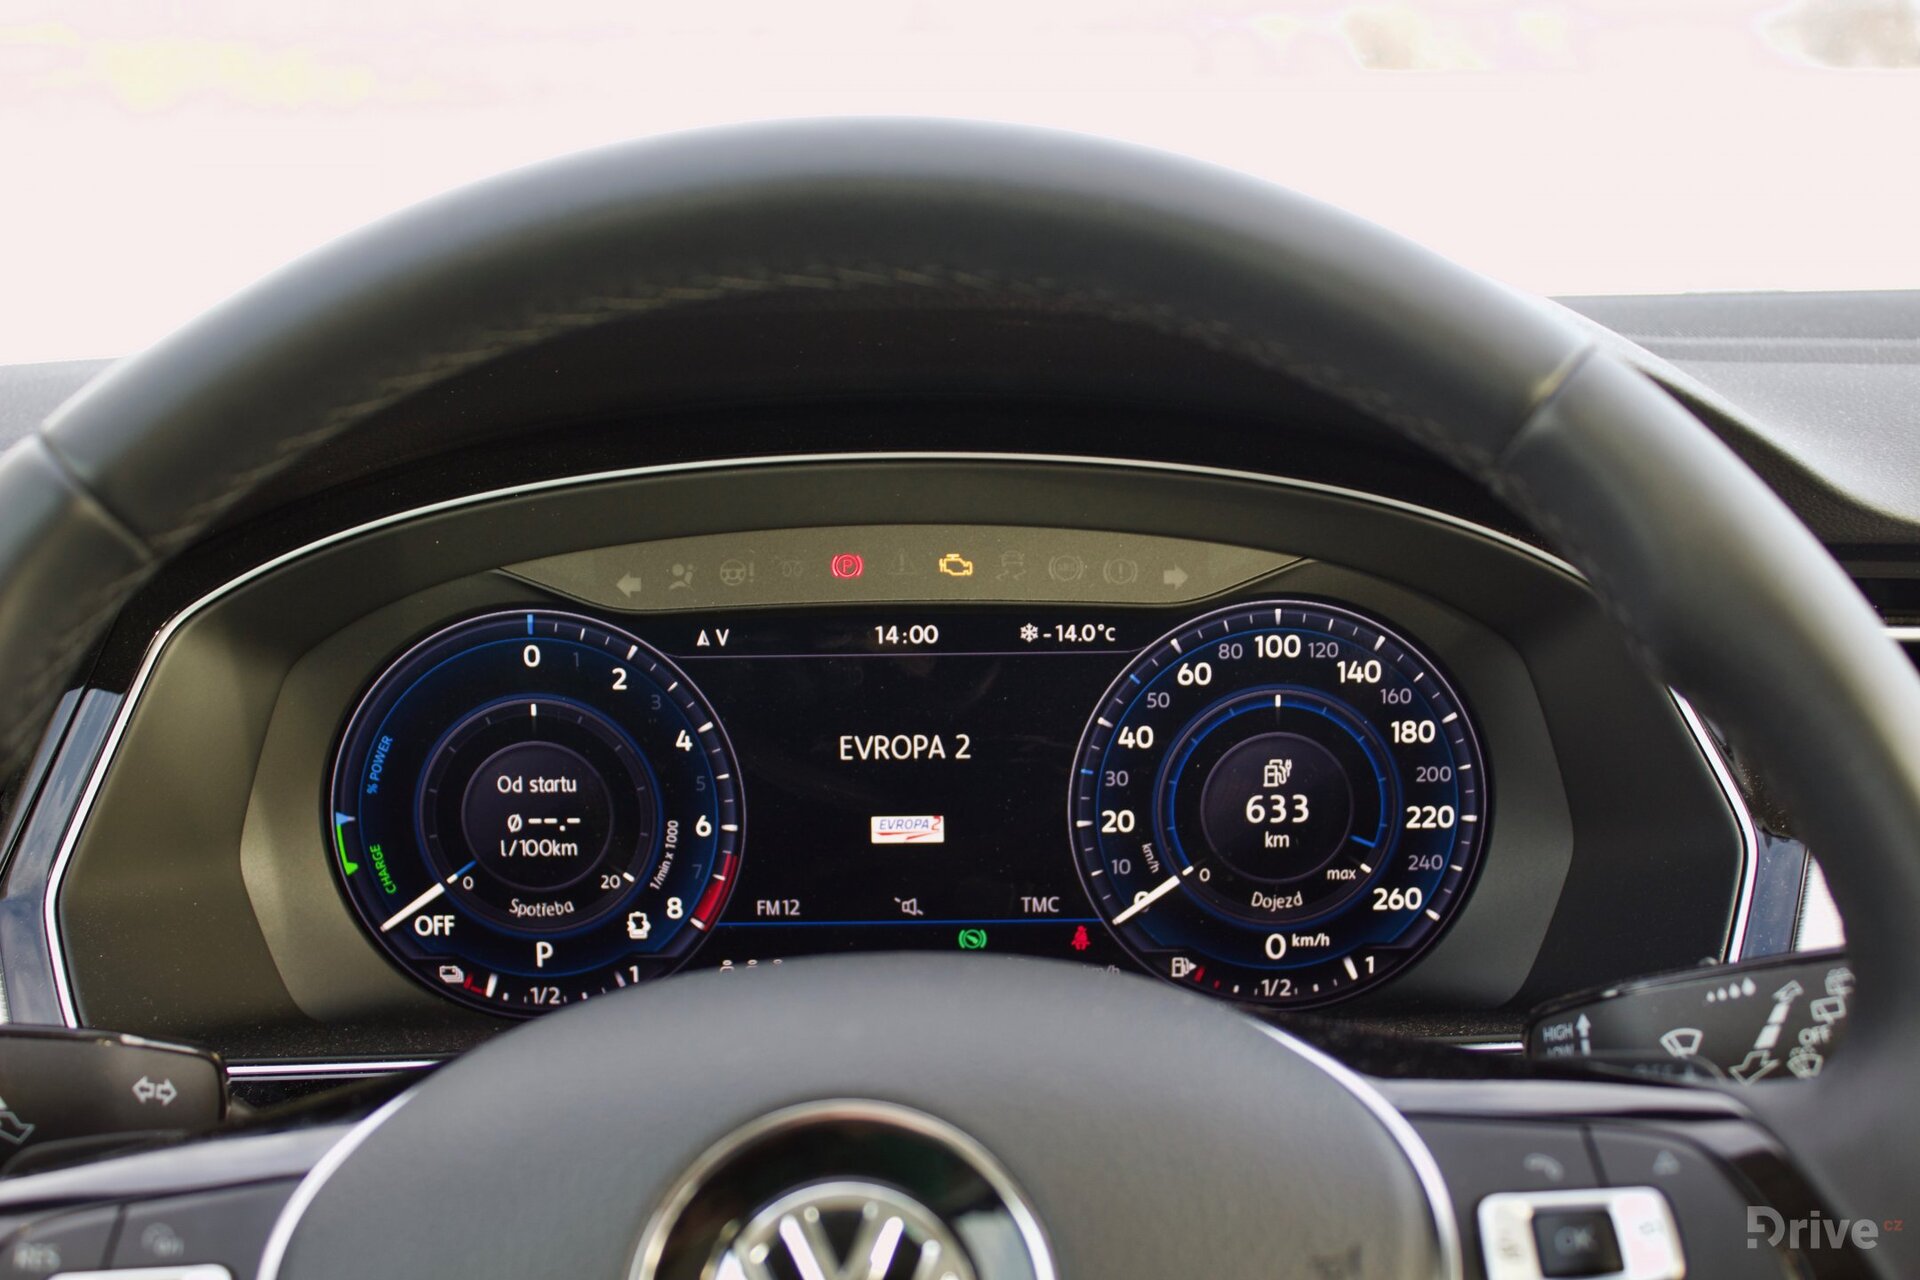 Volkswagen Passat GTE (2015)